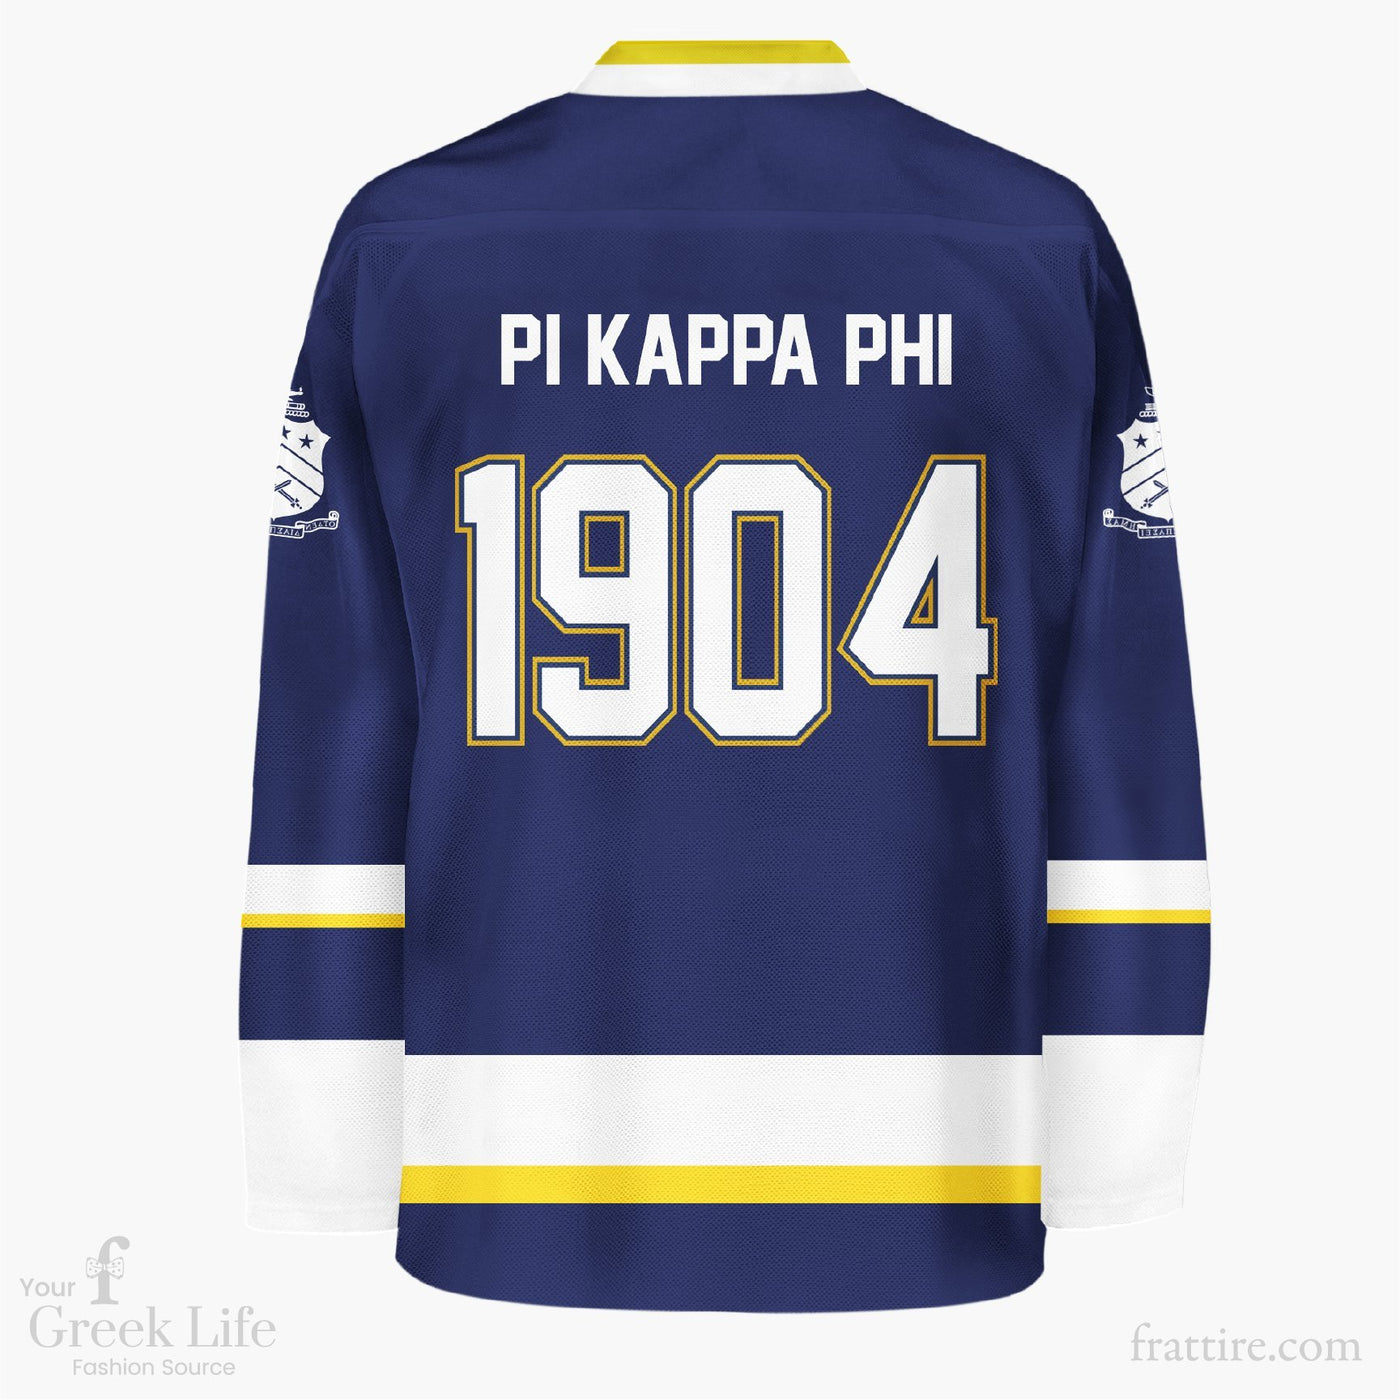 Pi Kappa Phi UL Chapter Hockey Jersey